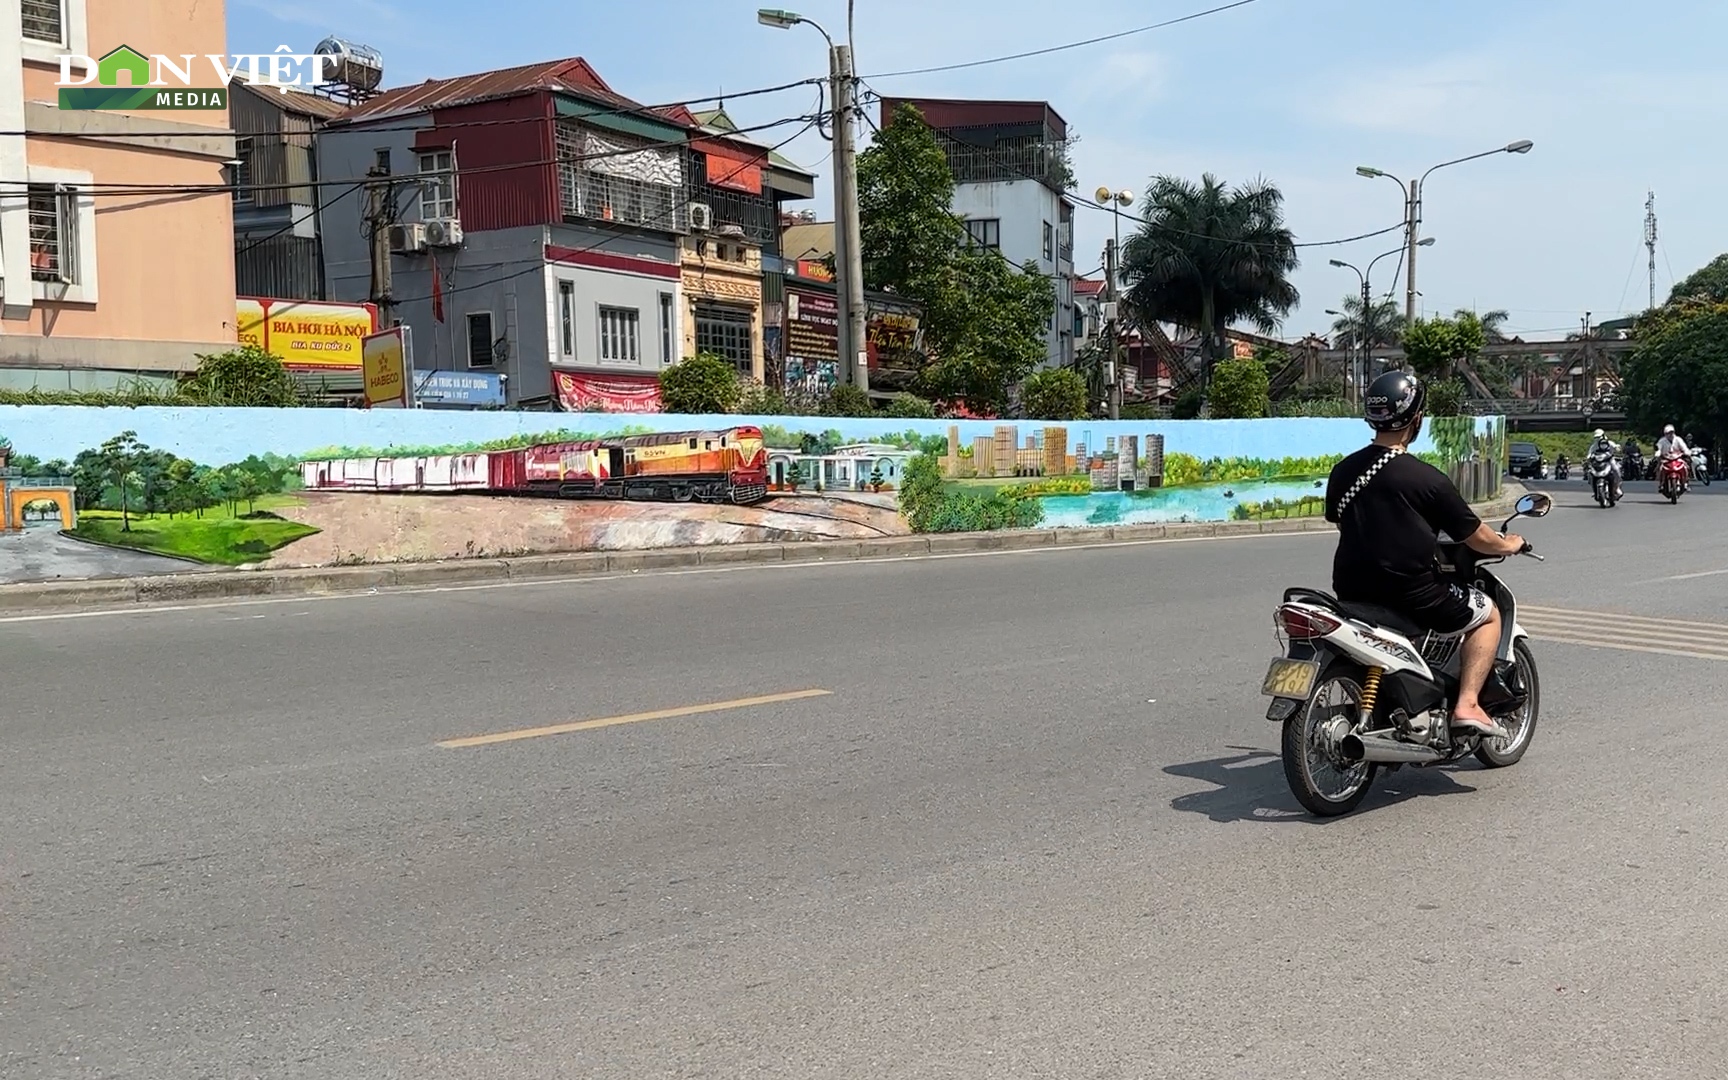 Video: Con đường bích họa ở Long Biên mang luồng sinh khí mới cho người dân Hà Nội